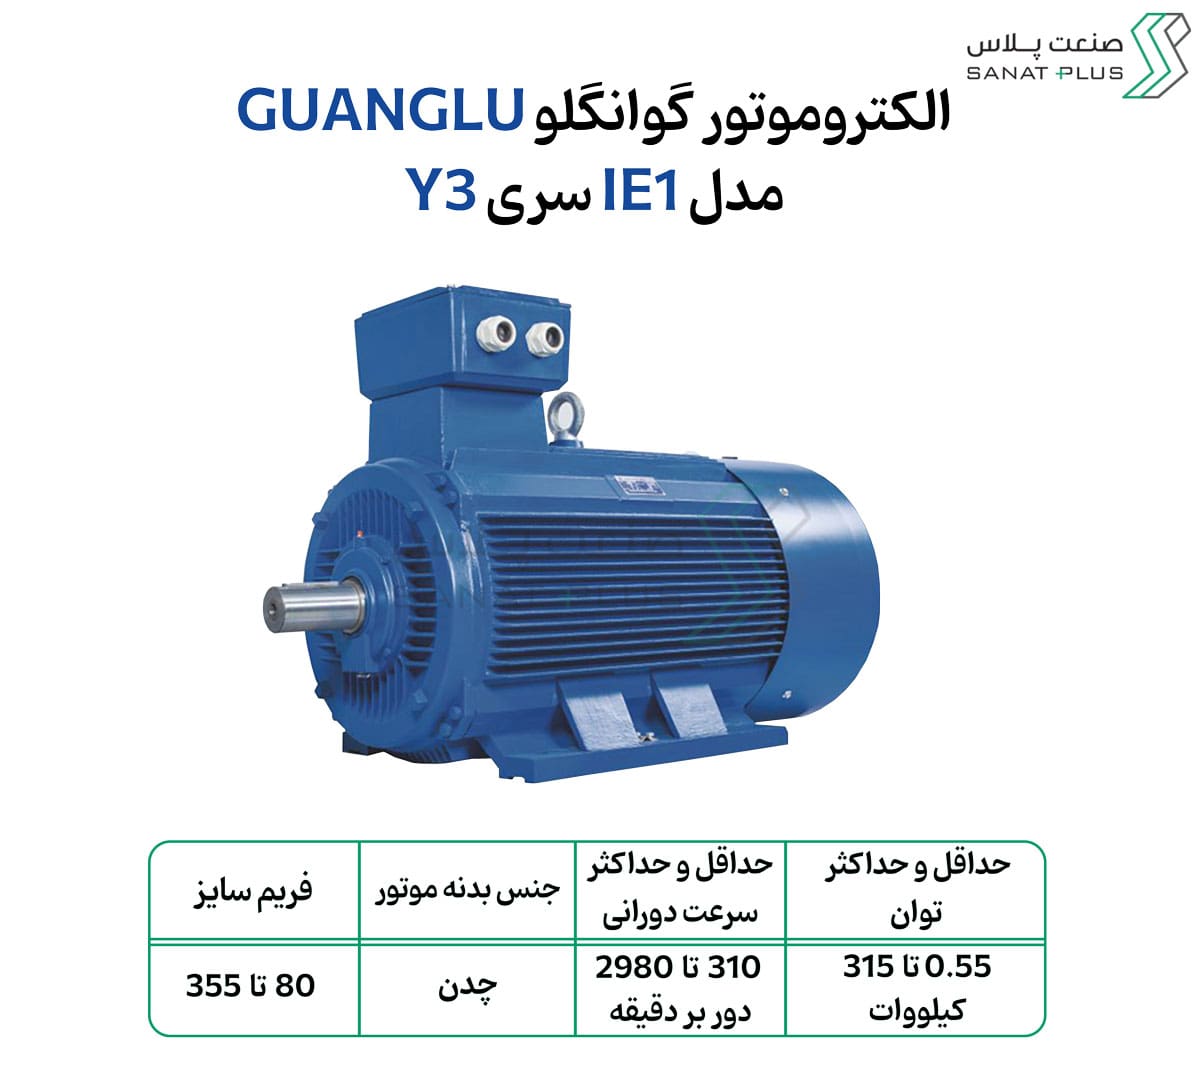 الکتروموتور گوانگلو (GUANGLU) مدل Y3